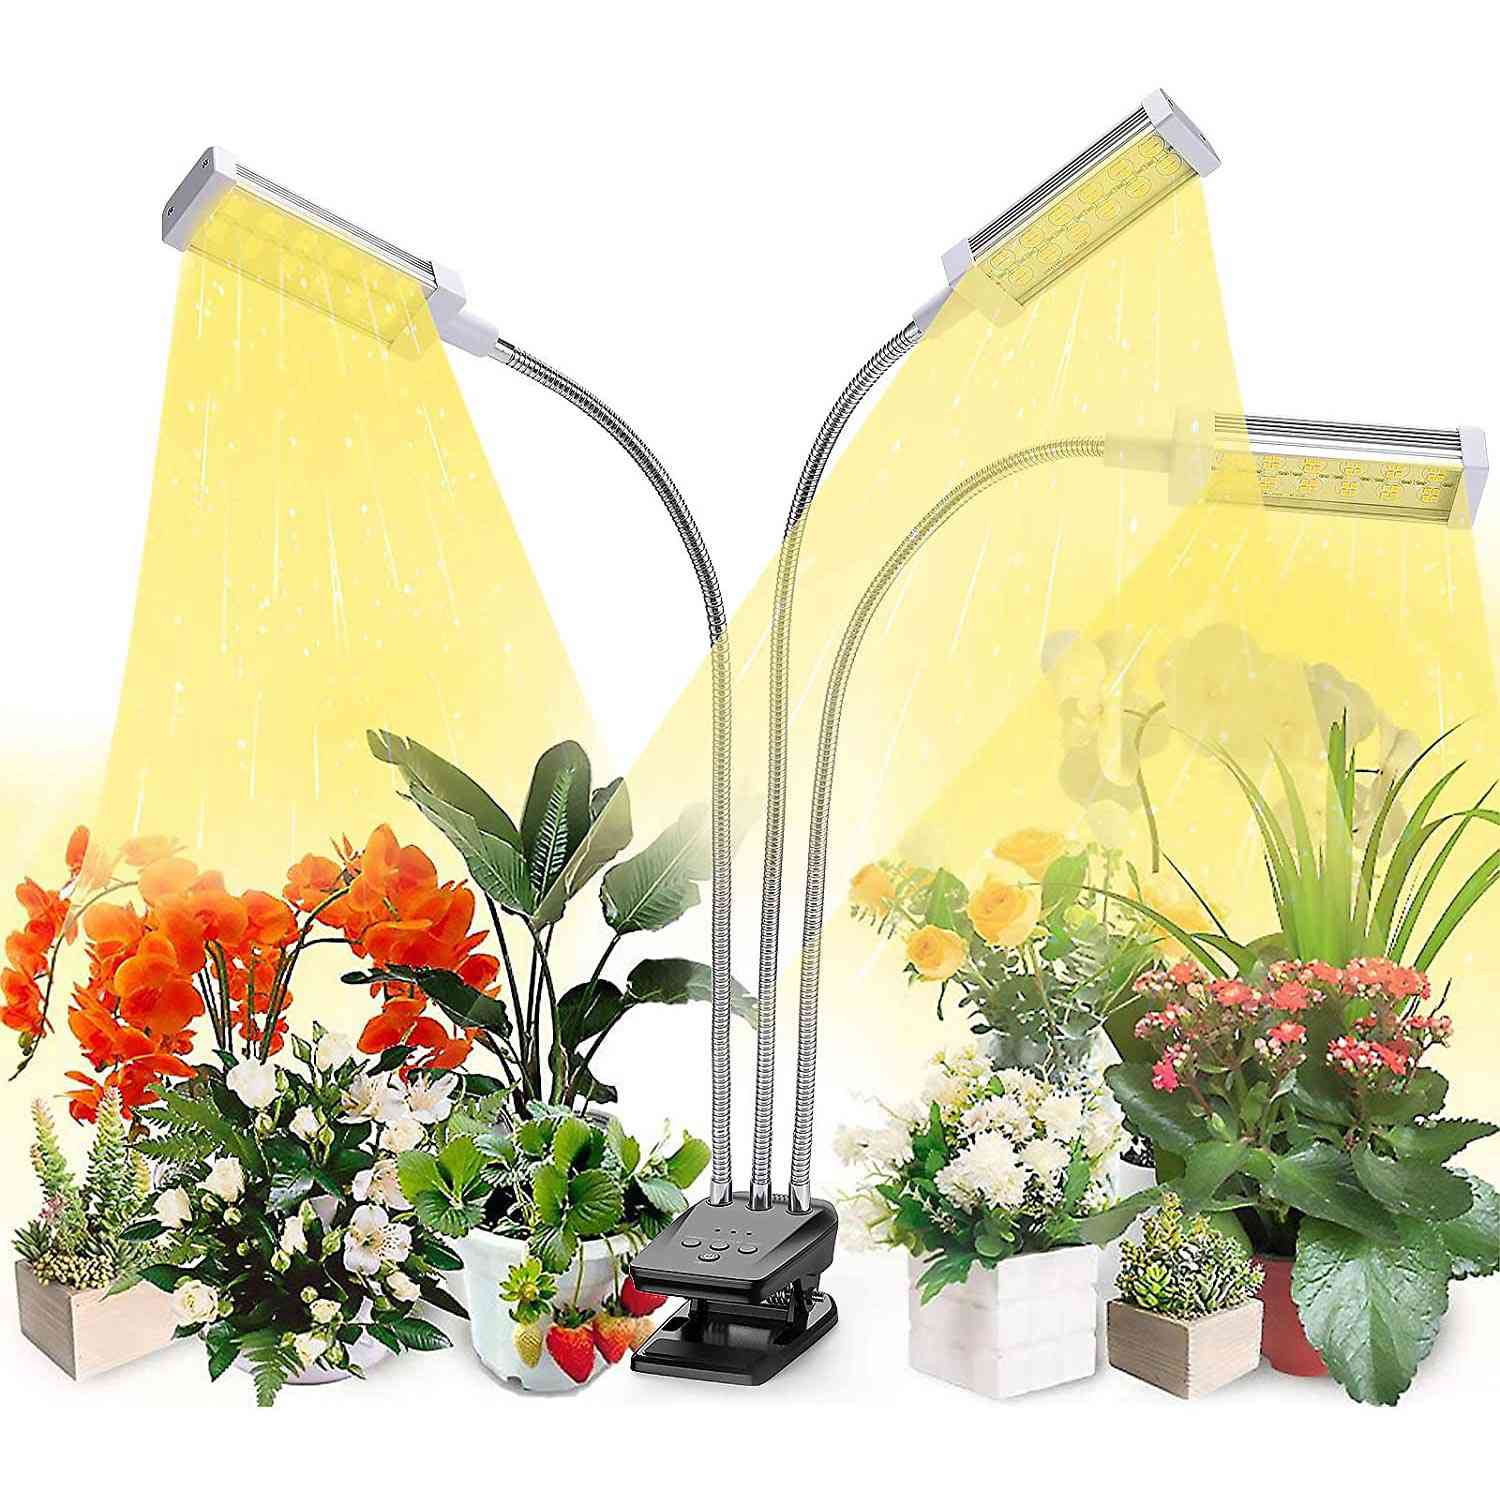 Plant Grow Light, VOGEK LED Growing Light Full Spectrum for Indoor Plants,